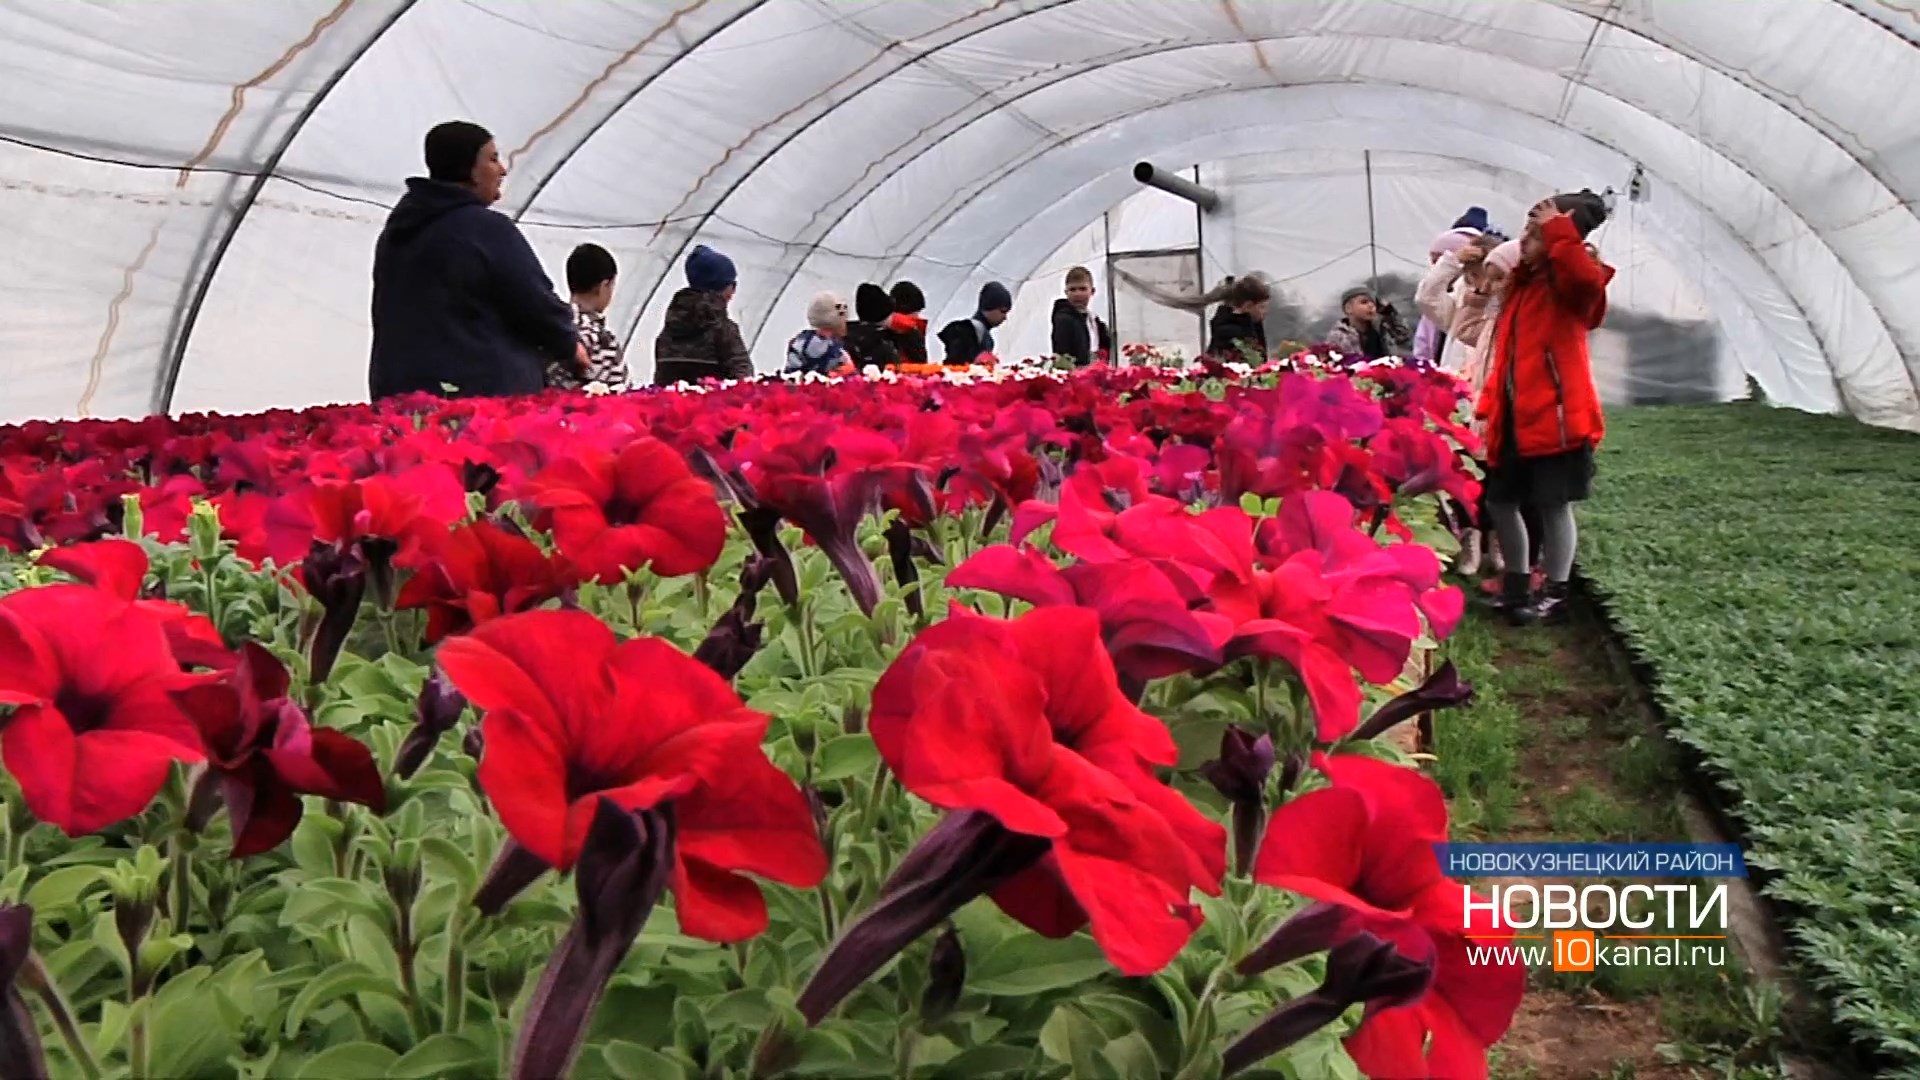 Более 1 000 000 цветов высадят на клумбы Новокузнецка